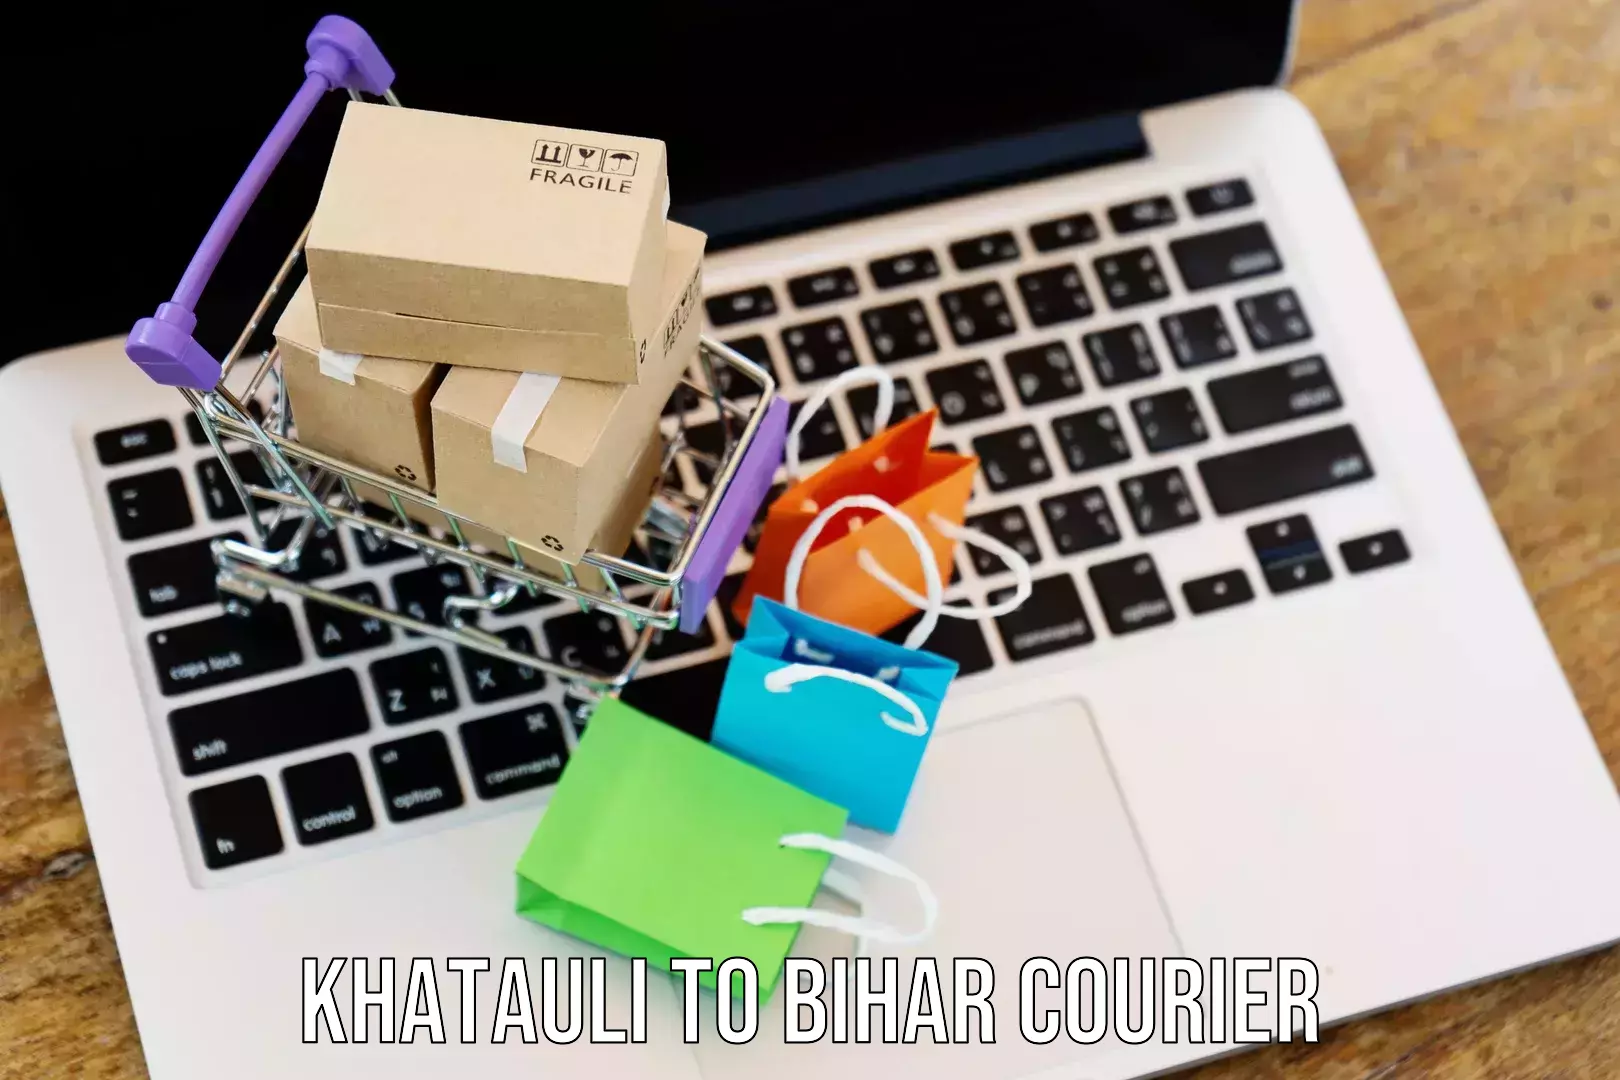 Modern delivery methods Khatauli to Aurangabad Bihar